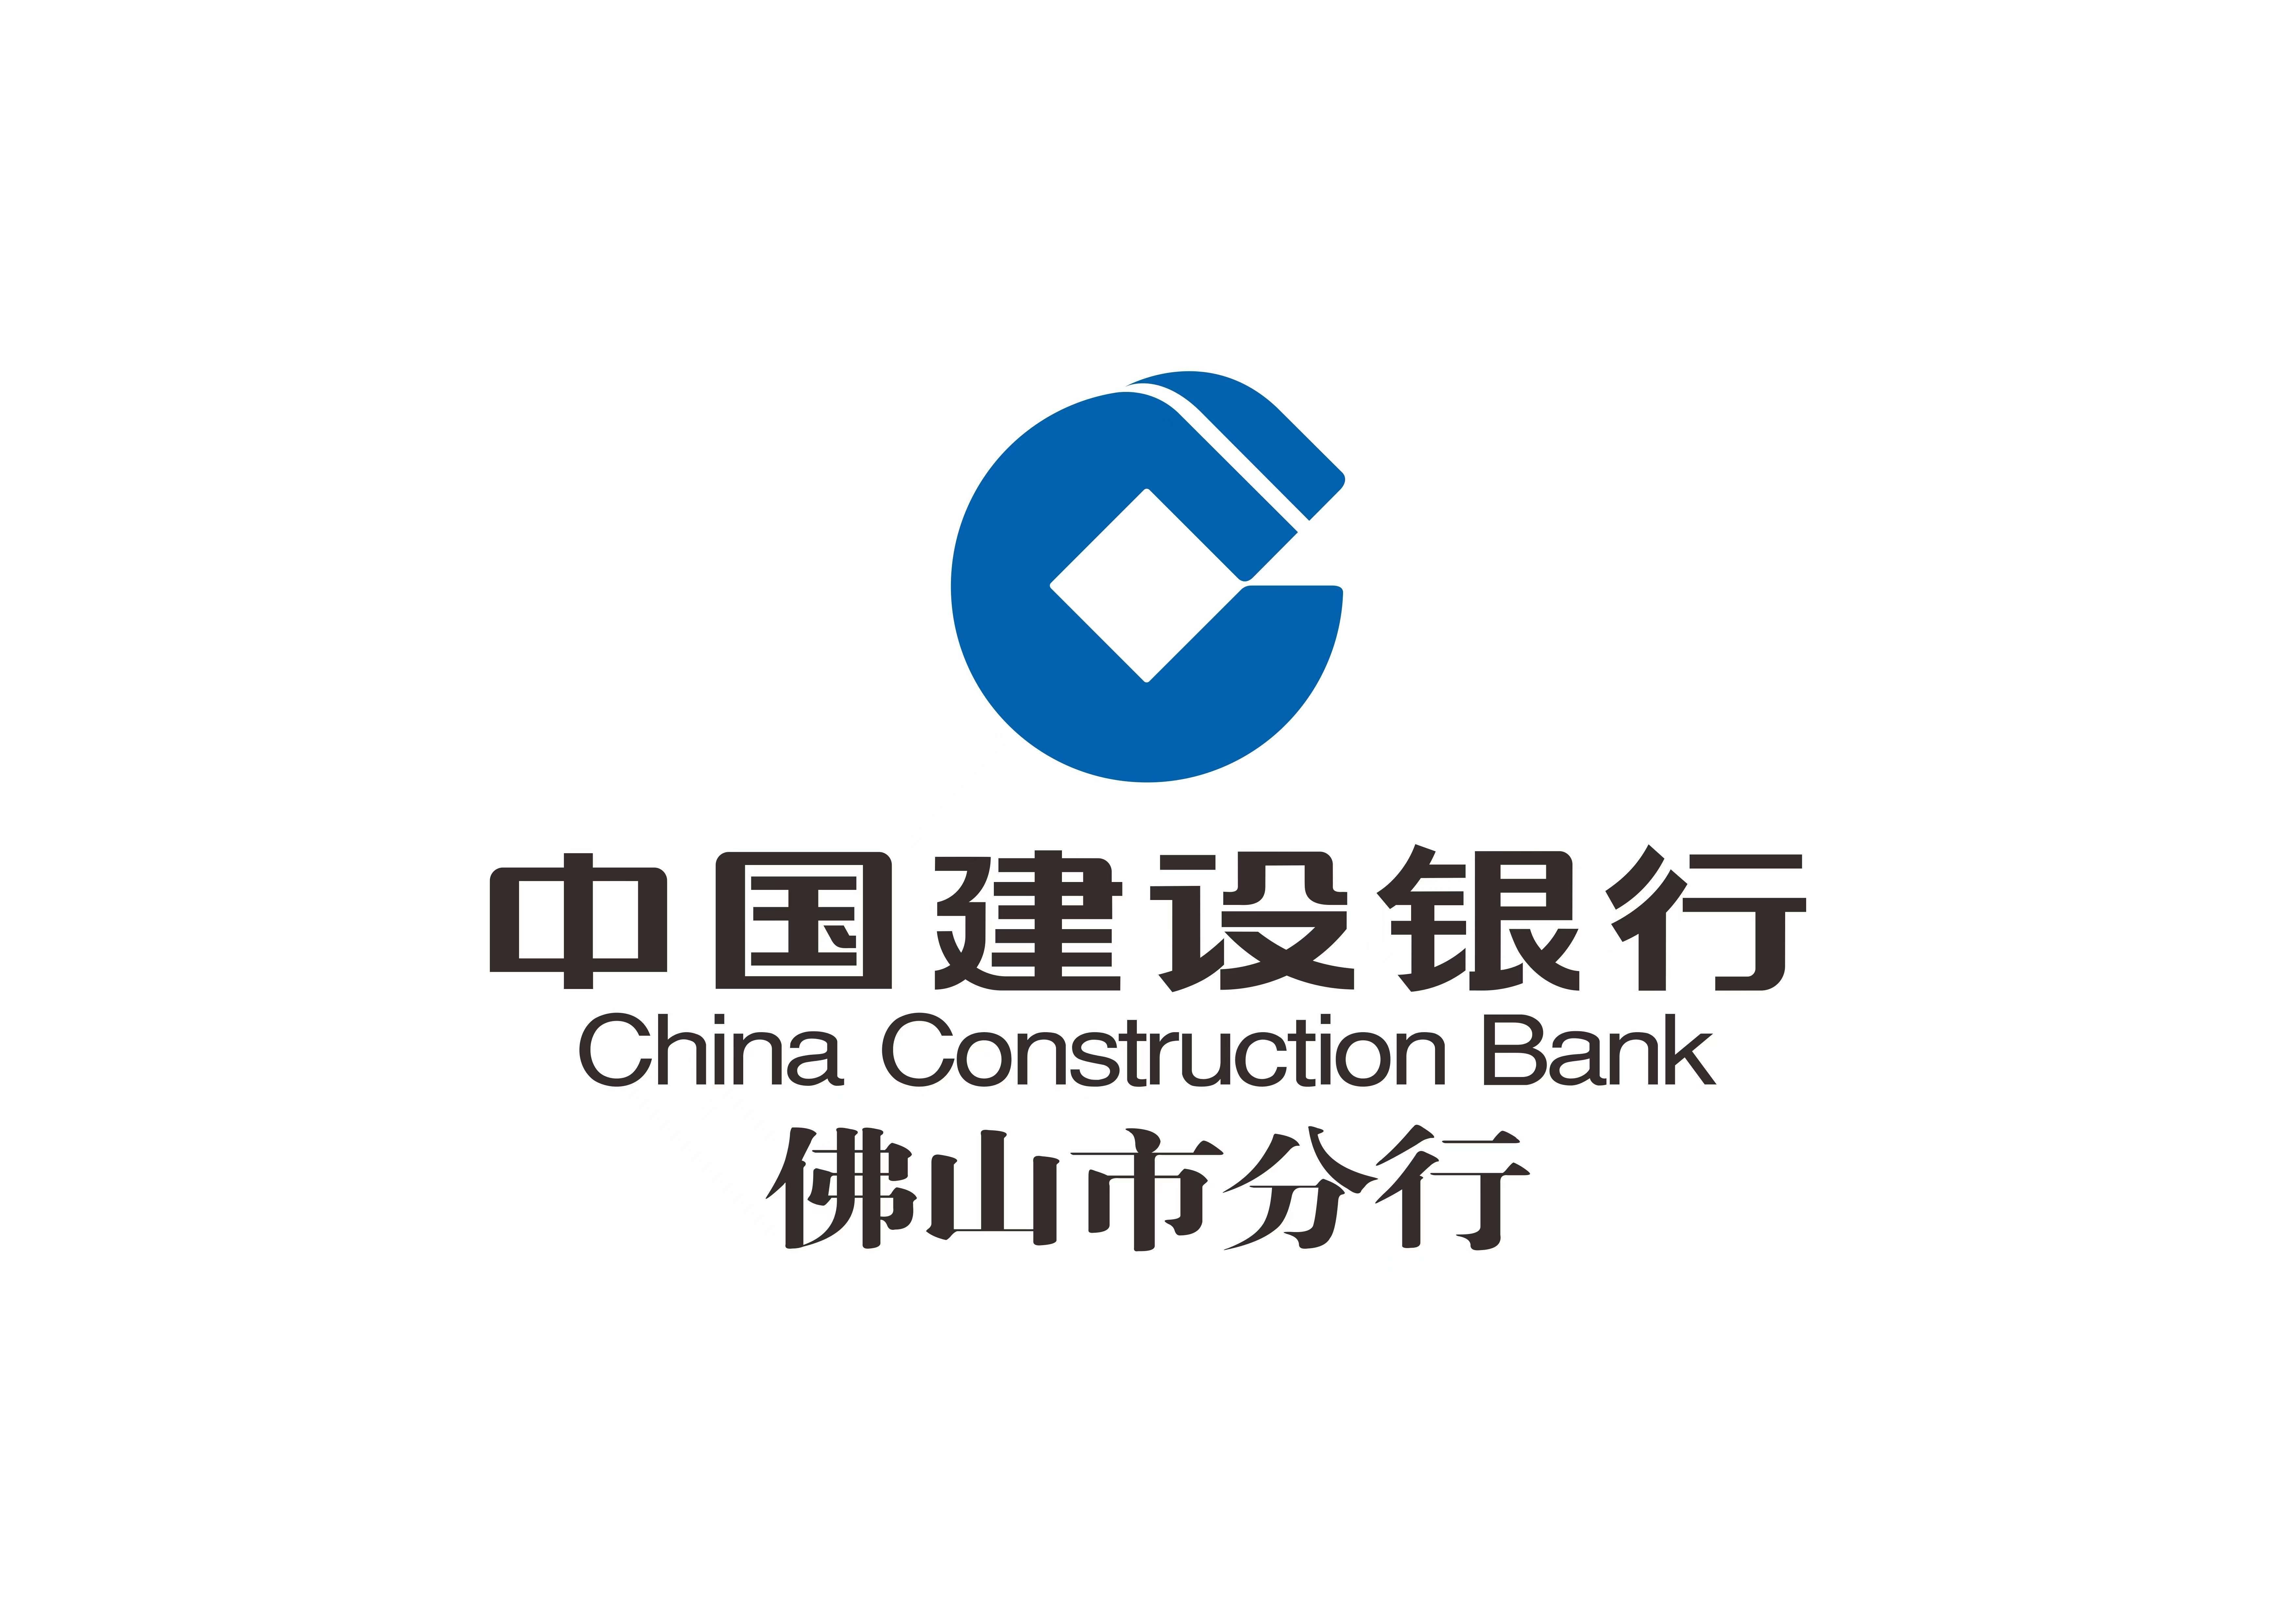 中国建设银行佛山市分行进一步优化“商户云贷”普惠金融产品